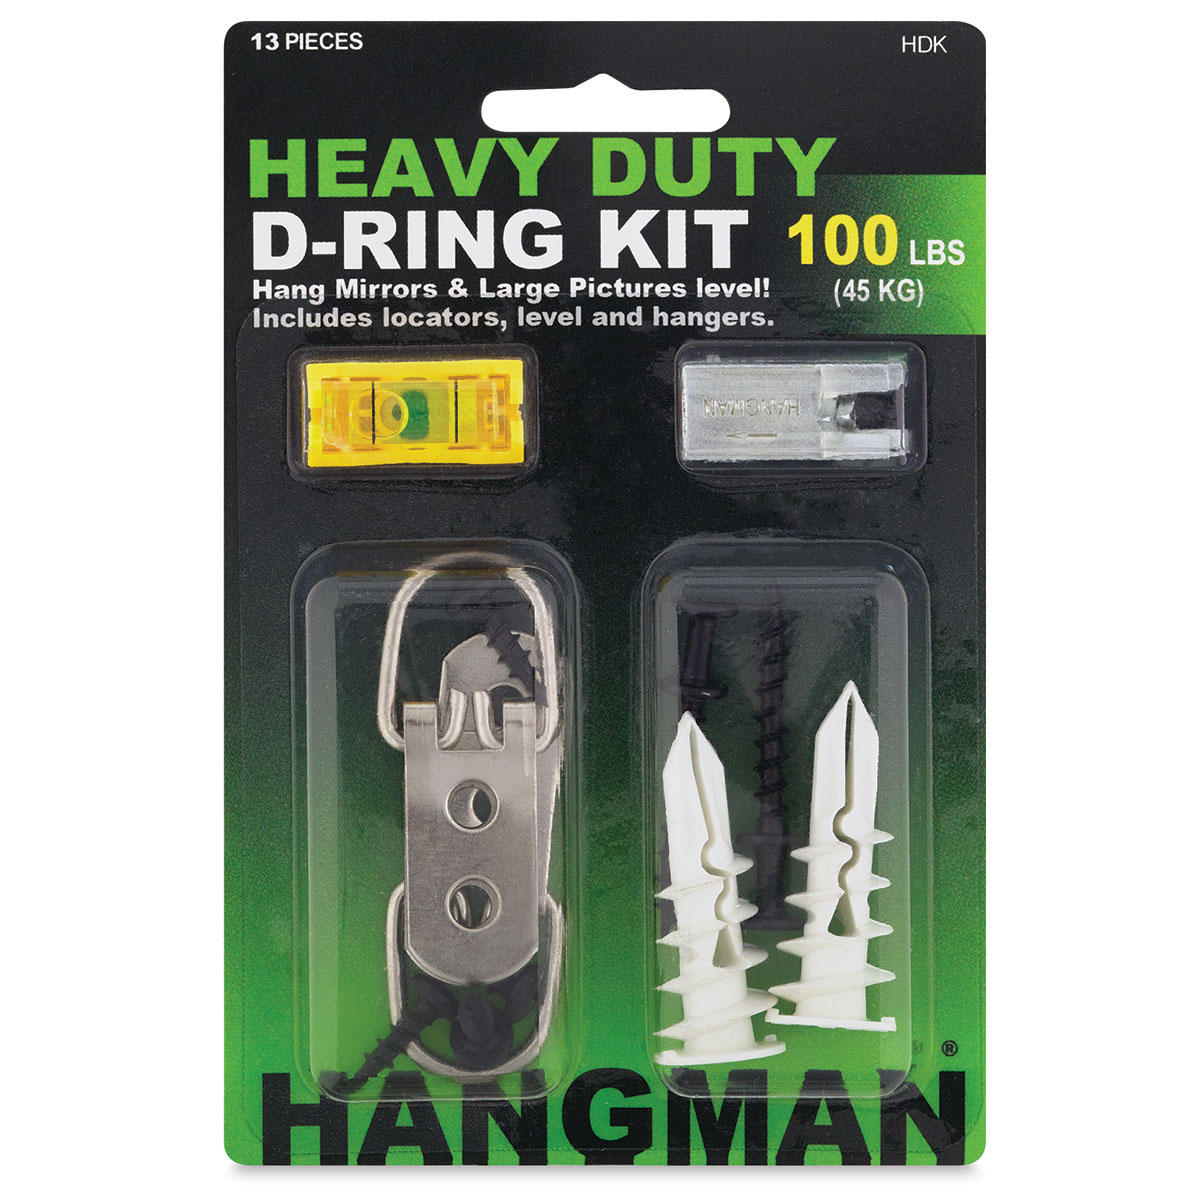 Hangman HDK Heavy-duty D-ring Hanging Kit for sale online 